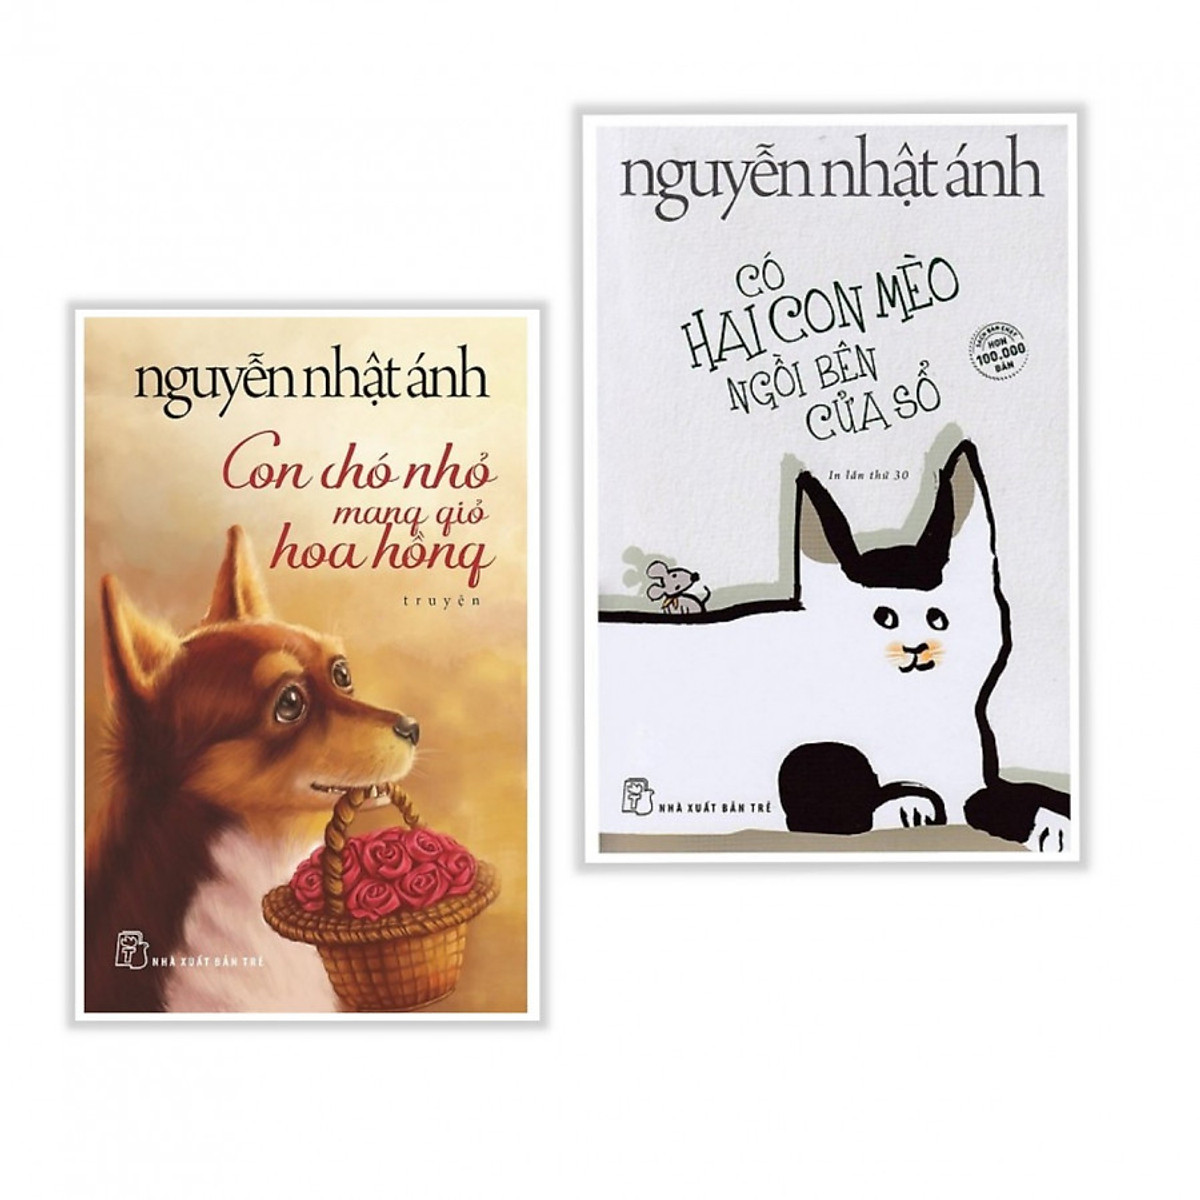 Nguyễn Nhật Ánh là một trong những tác giả nổi tiếng với những tác phẩm mang đậm tình yêu động vật, đặc biệt là mèo. Sách \